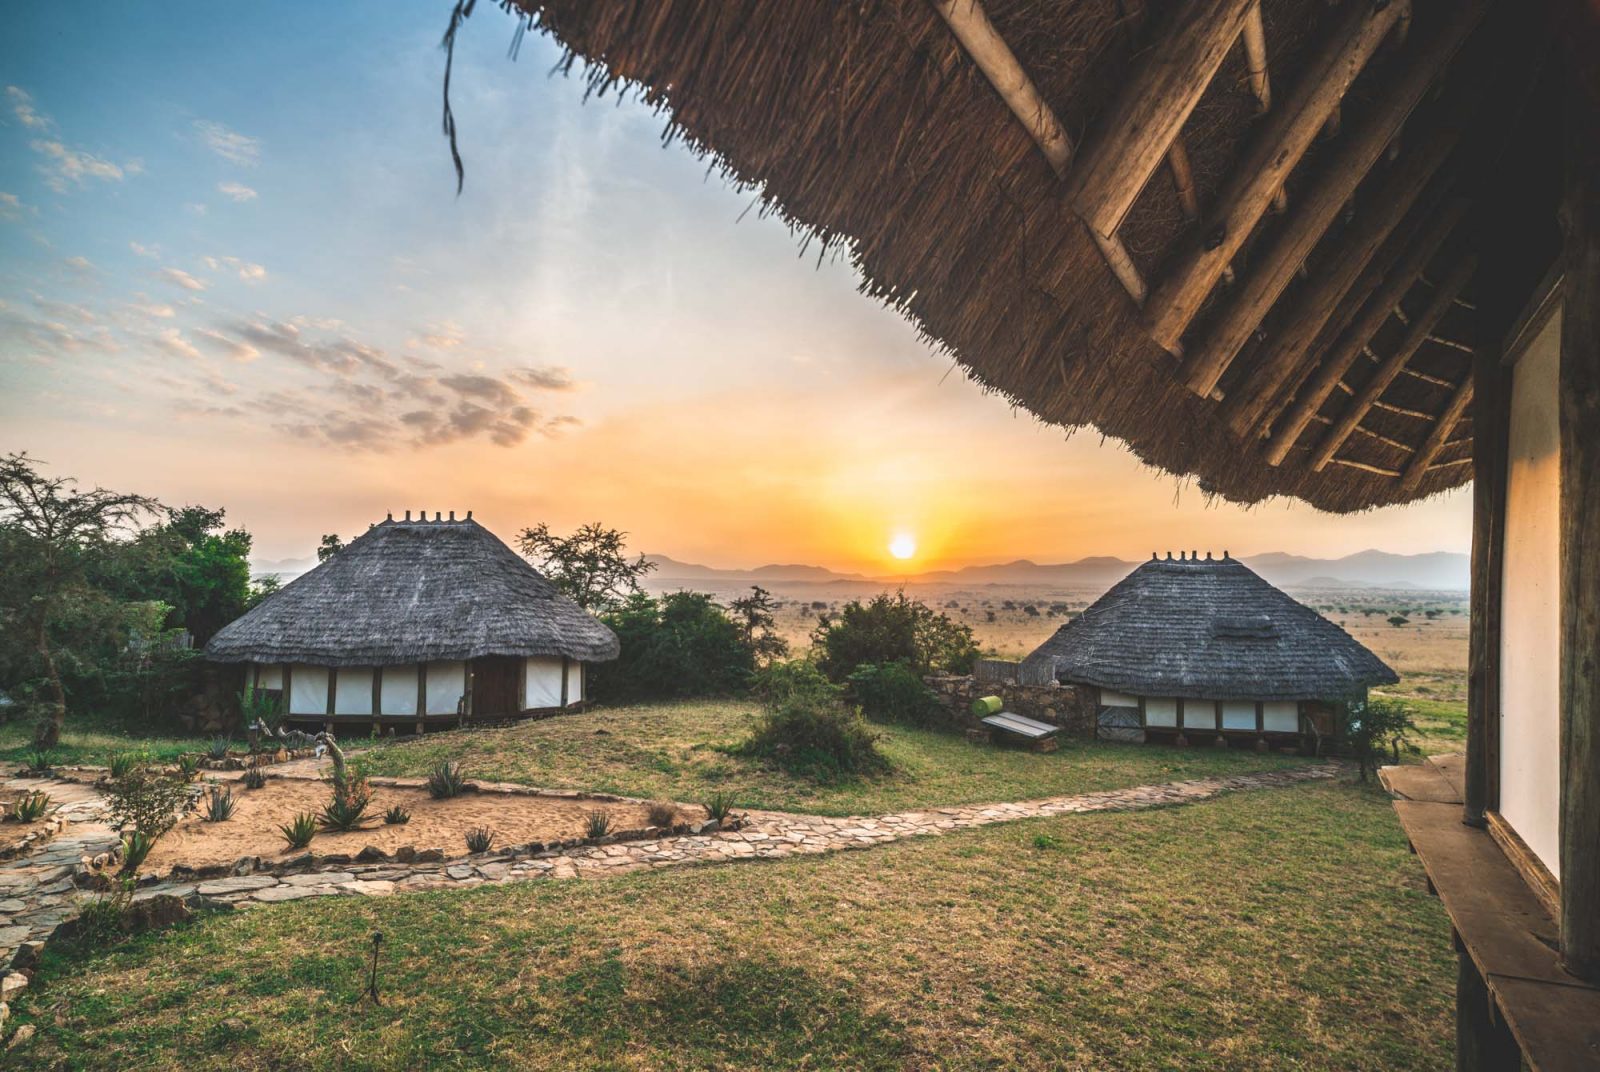 阿波卡狩猎旅馆-乌干达基代坡国家公园的生态豪华